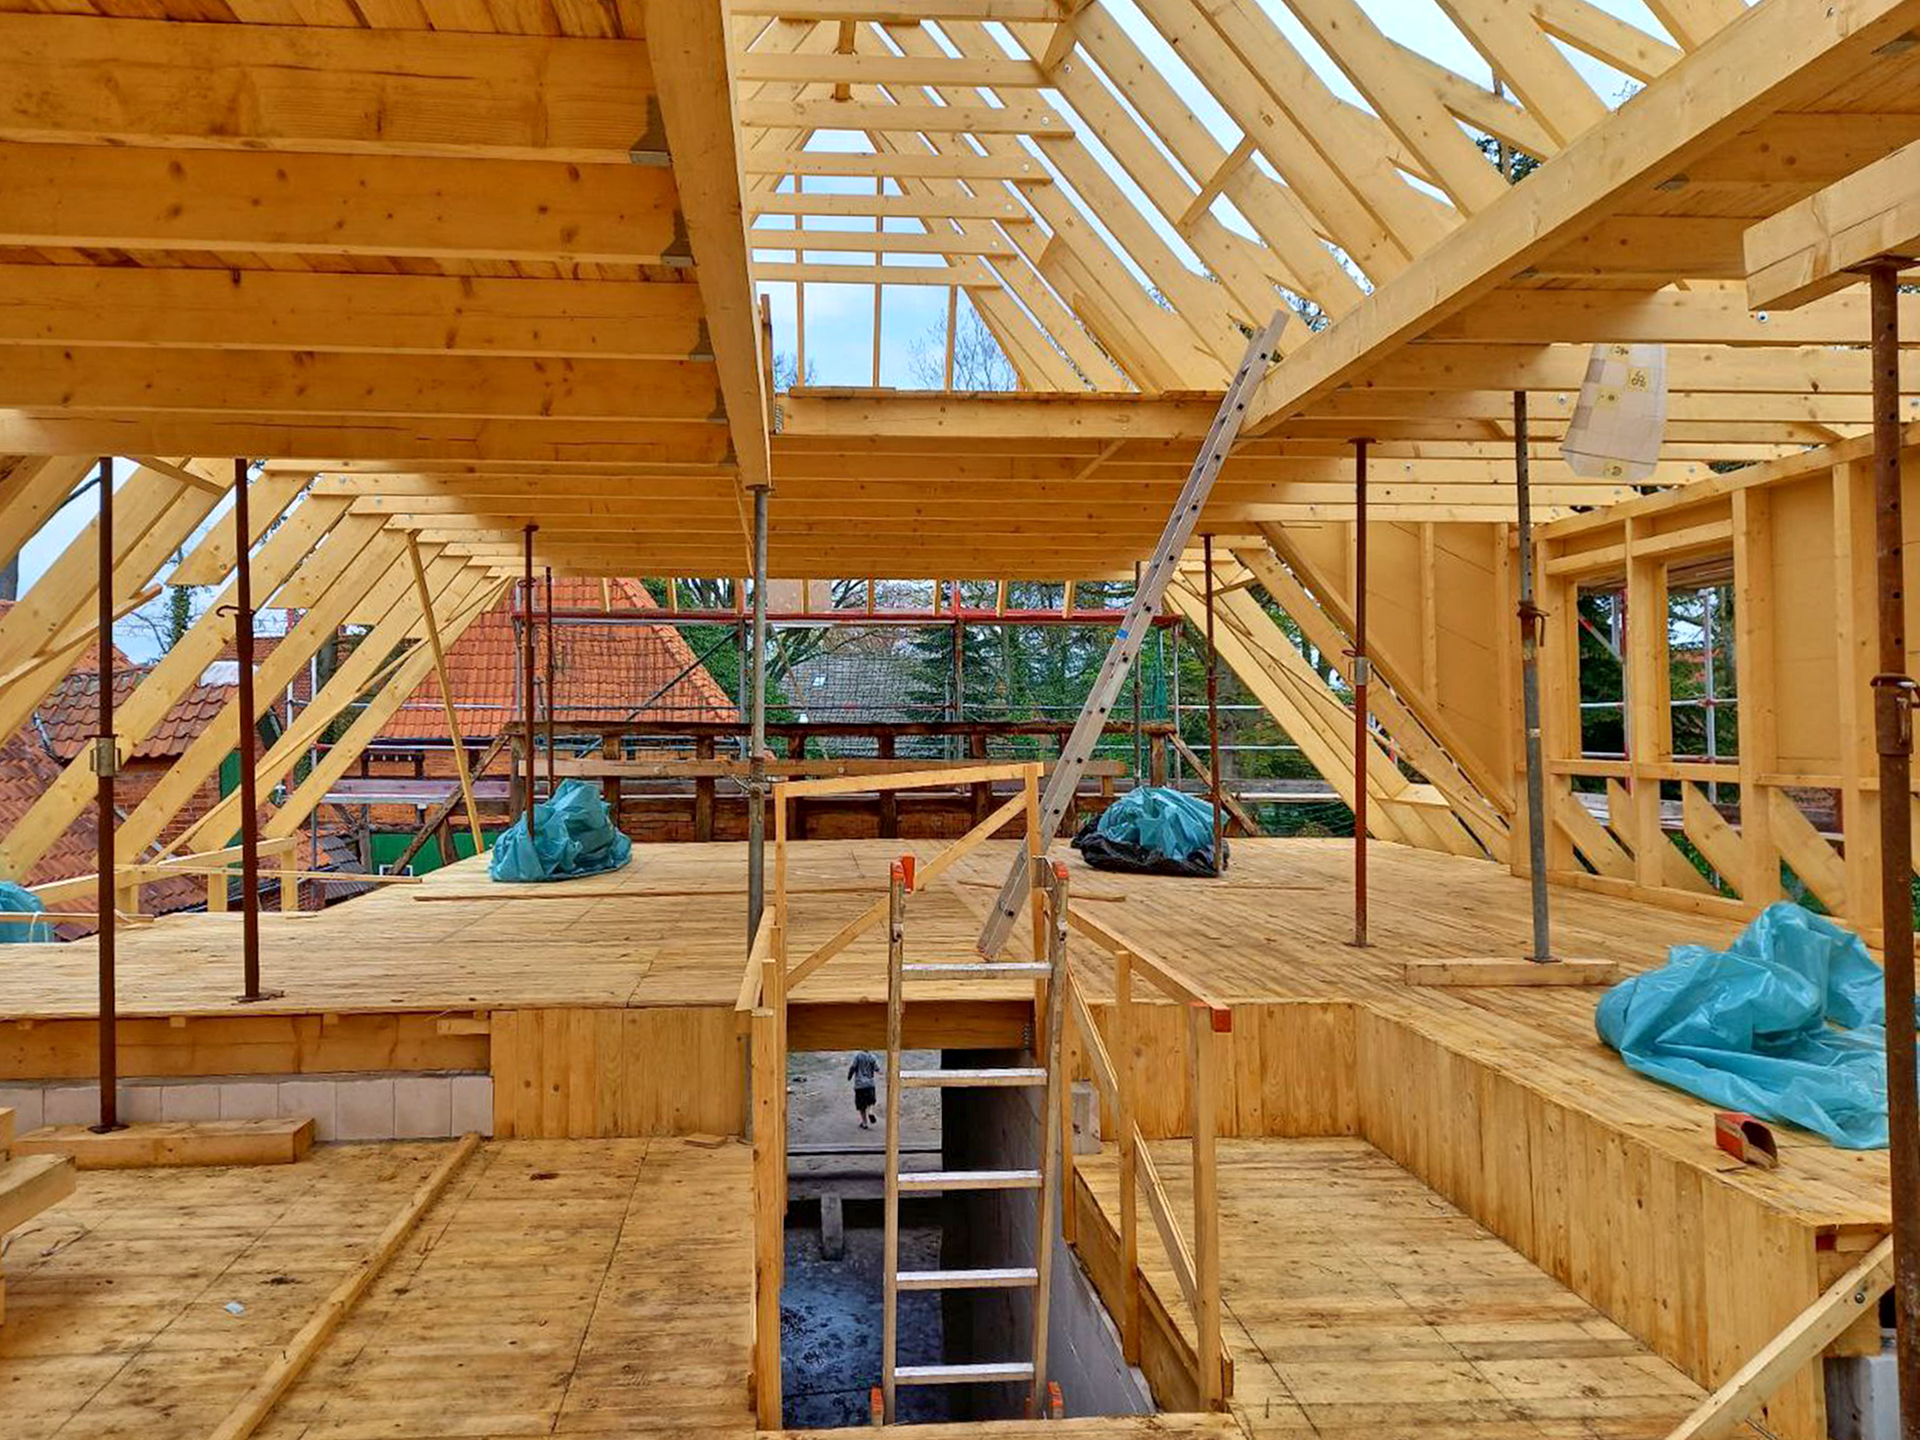 Foto vom Dach des Westennests, welches sich noch im Bau befindet. Die Konstruktion aus Holz ist zu sehen.